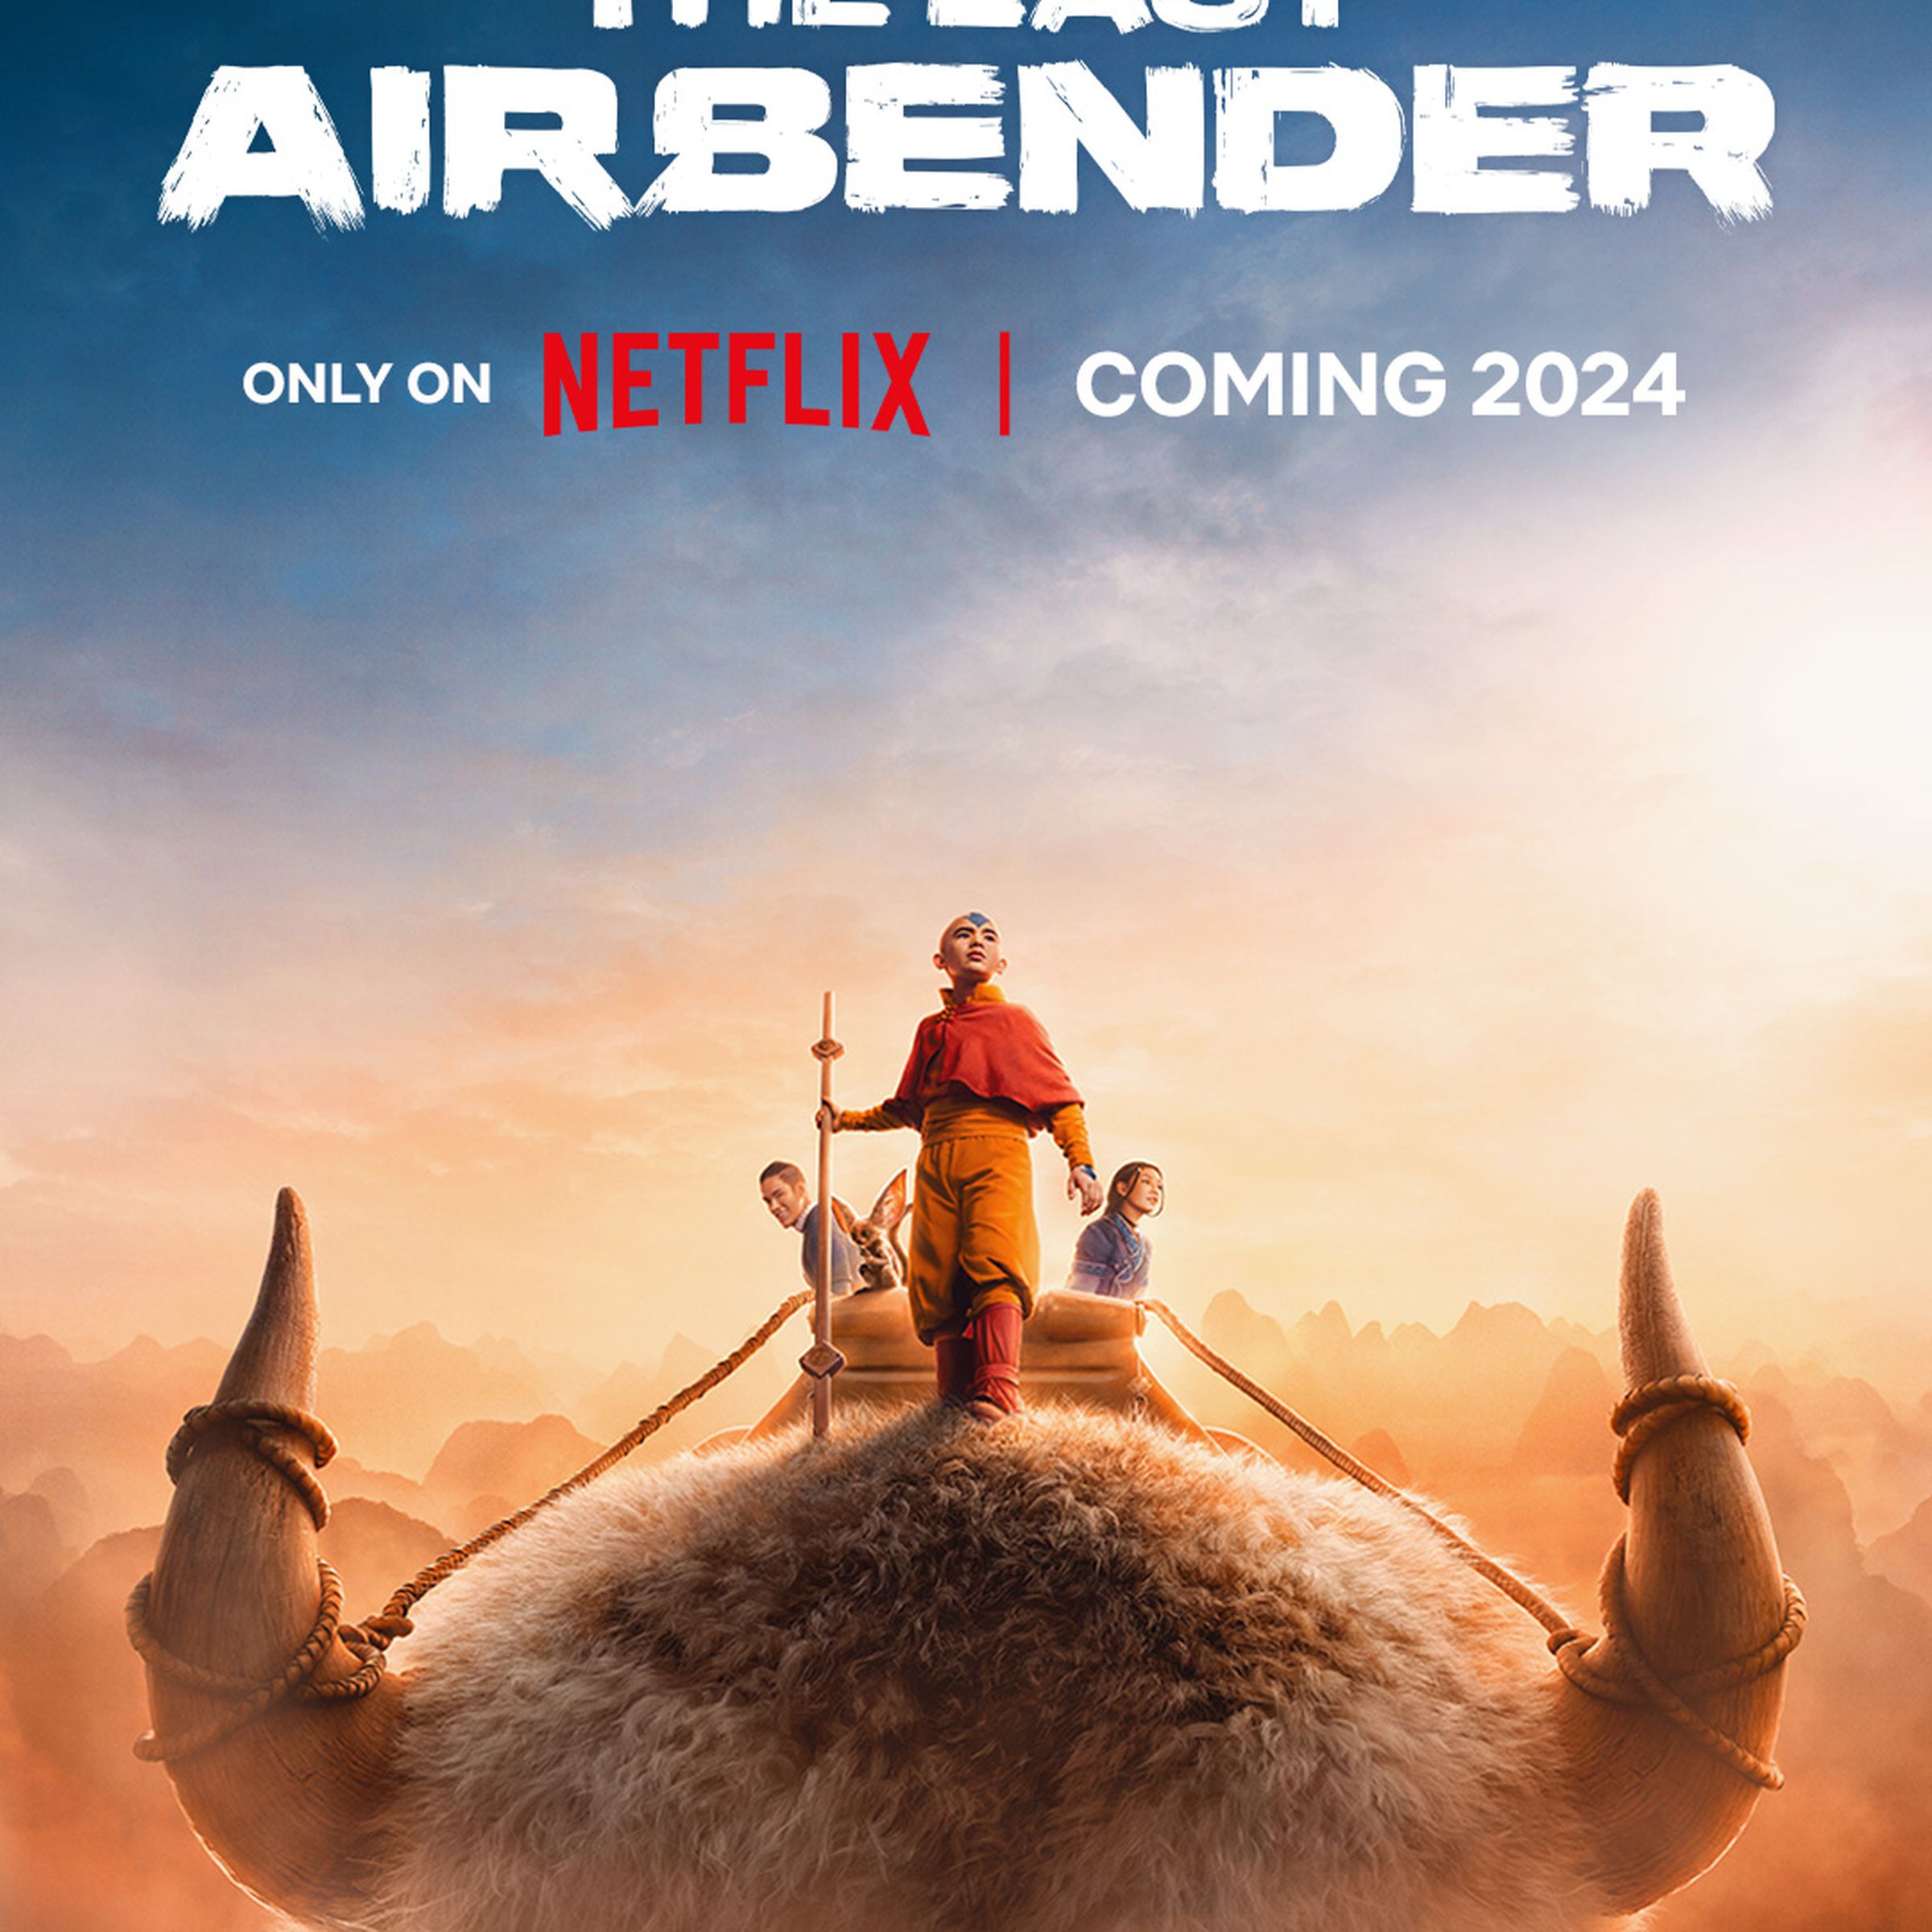 Key art for Avatar the Last Airbender featuring Aang, Sokka, Katara, Appa, and Momo